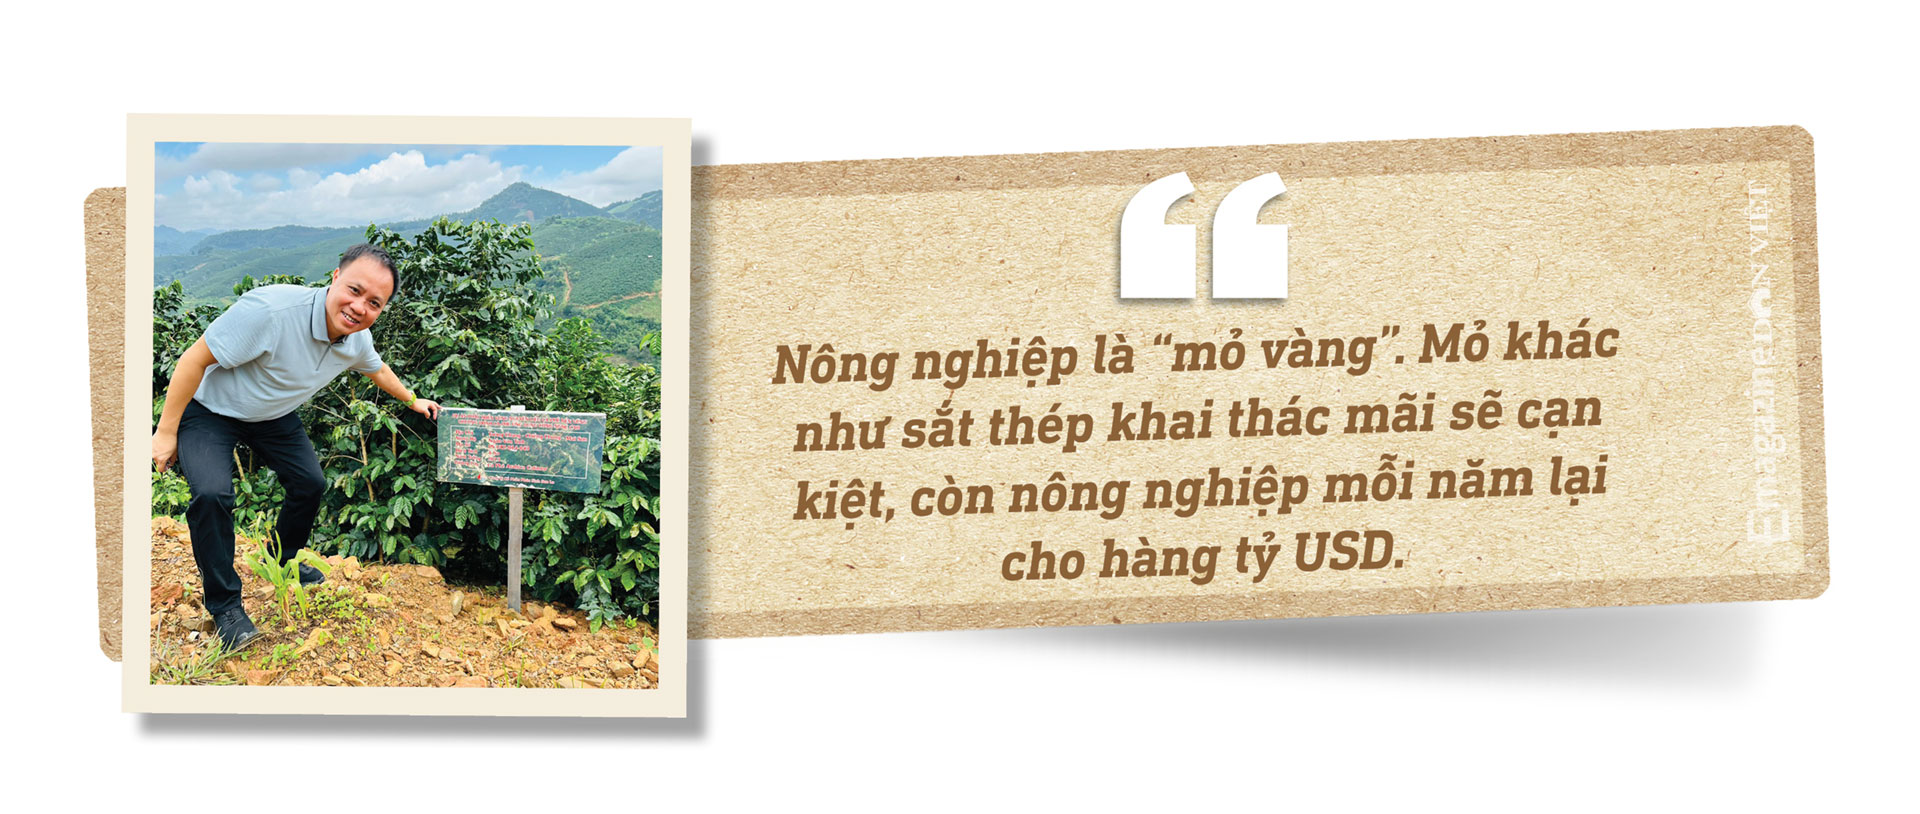 &quot;Vua tiêu&quot; Phan Minh Thông: Tôi cô đơn khi bán cà phê nguyên chất ở Việt Nam - Ảnh 3.